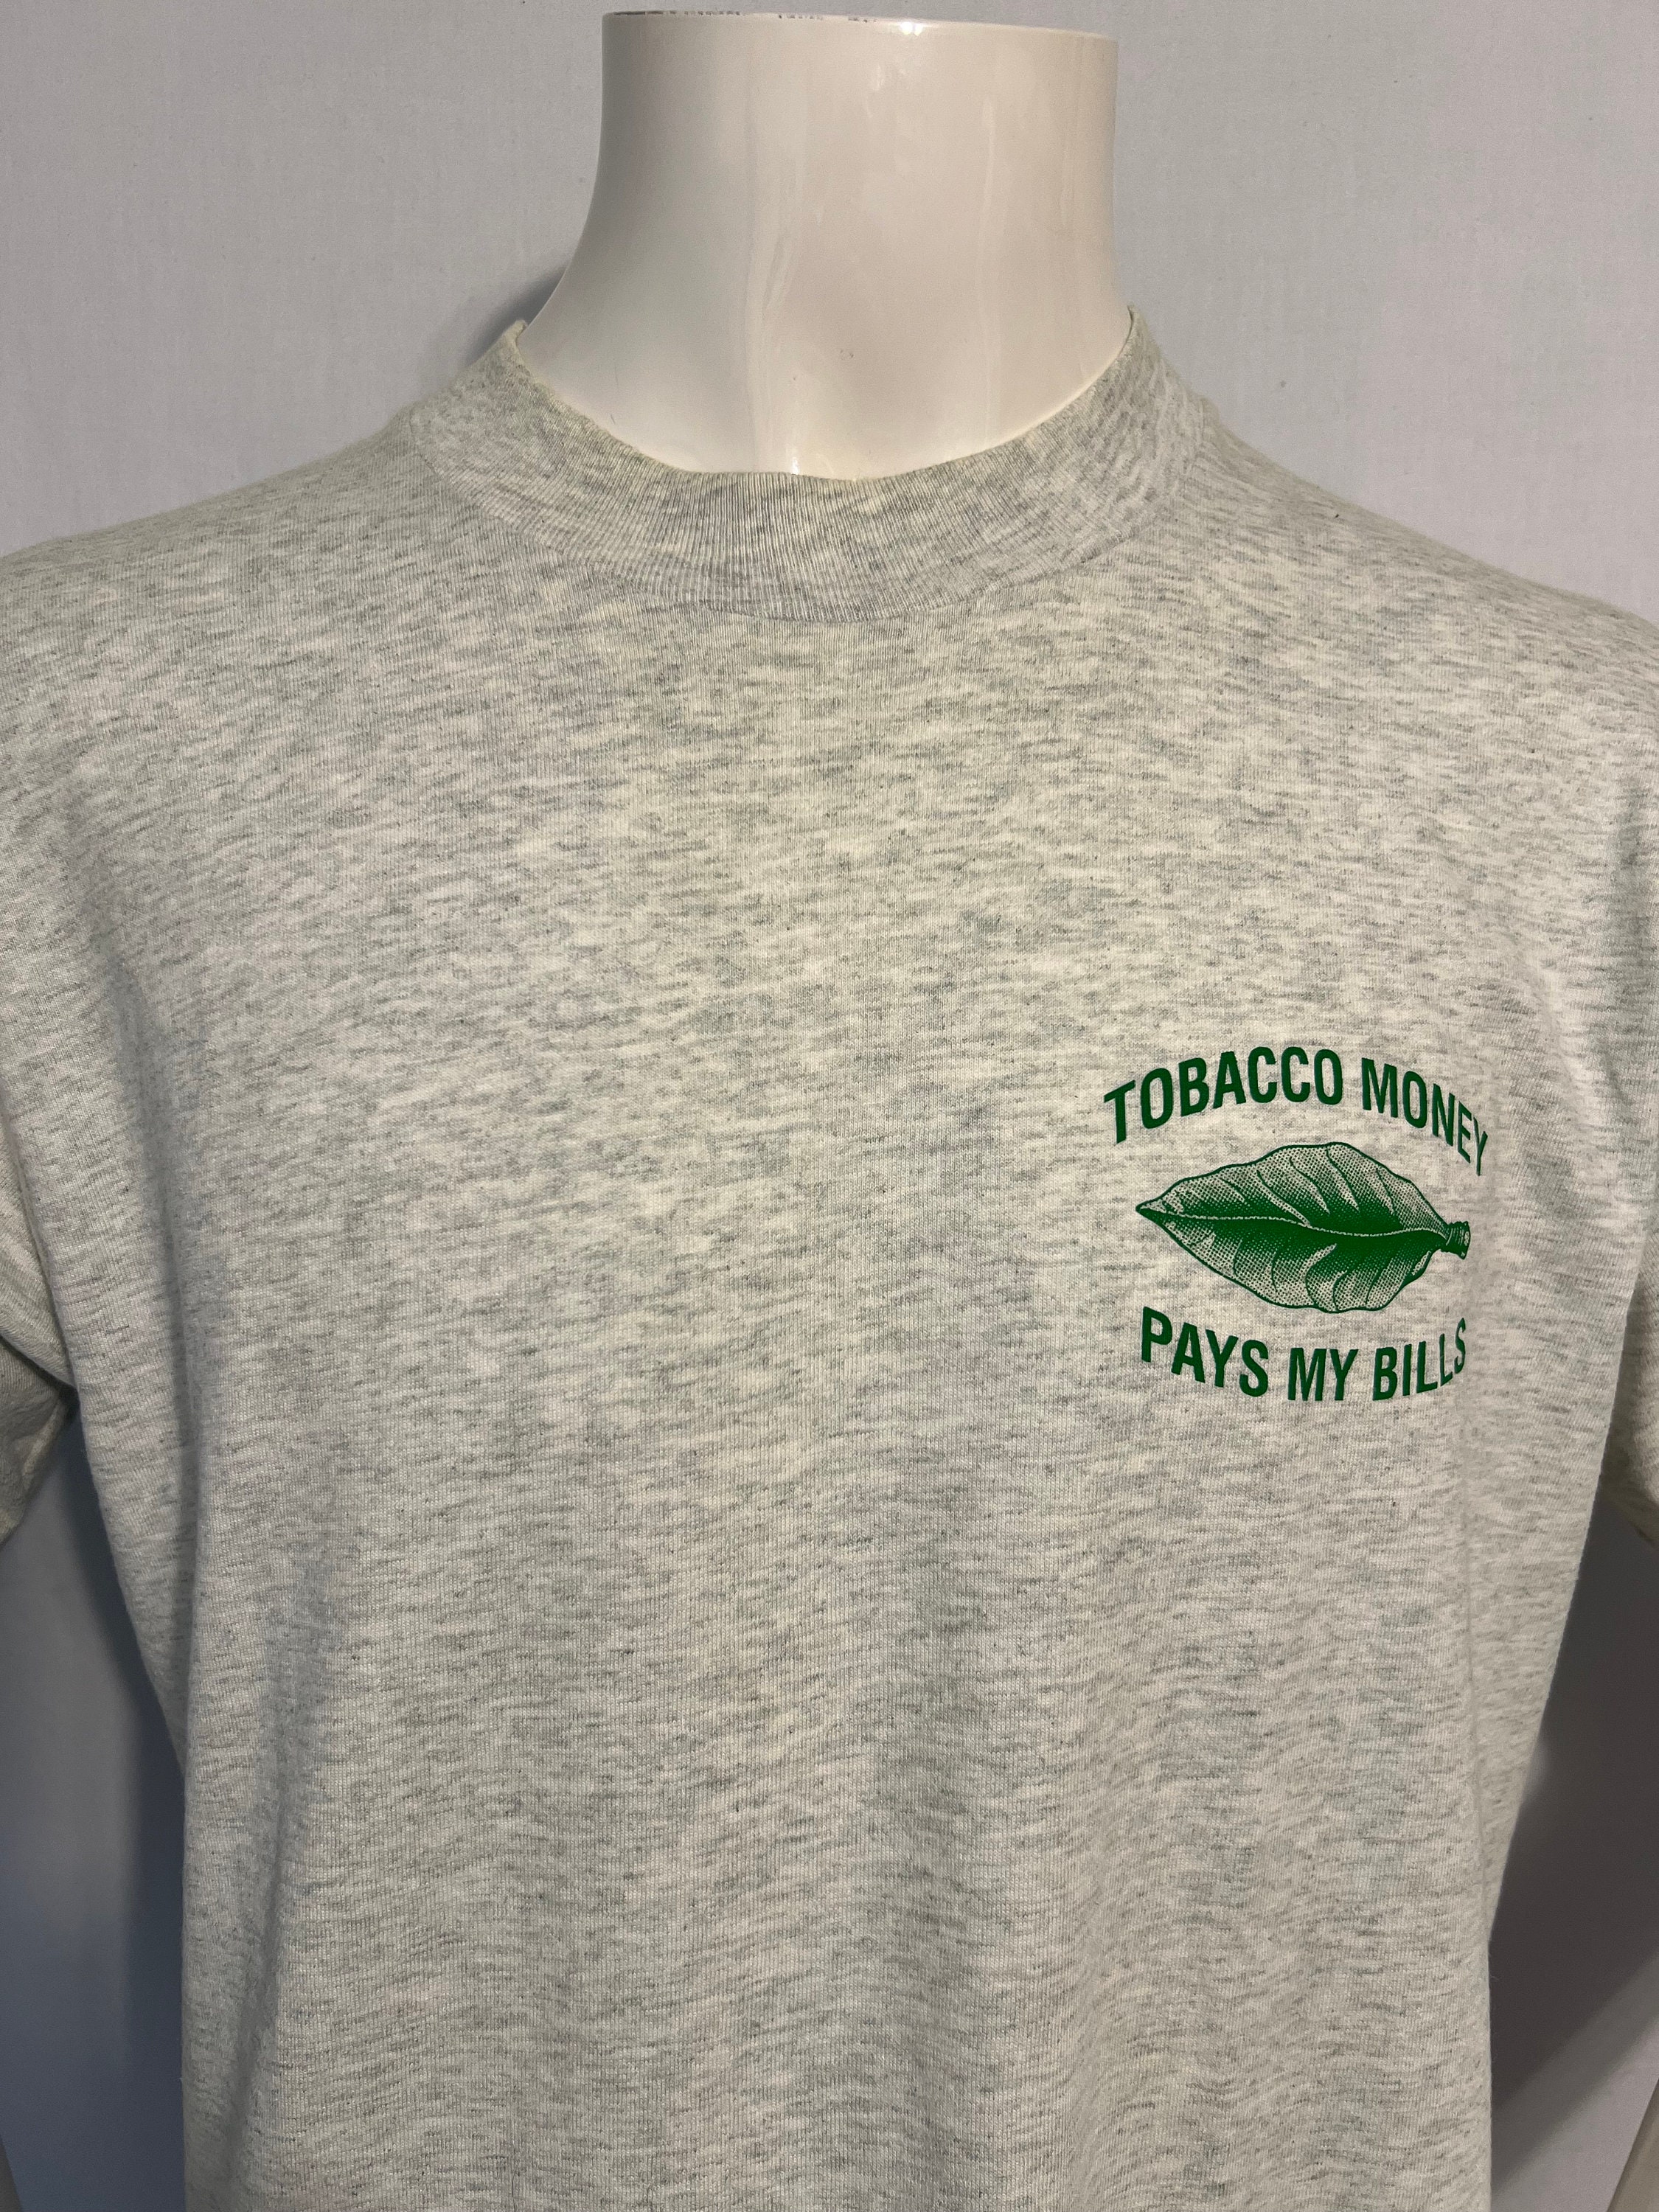 Vintage 90's Philip Morris Louisville T-Shirt – CobbleStore Vintage